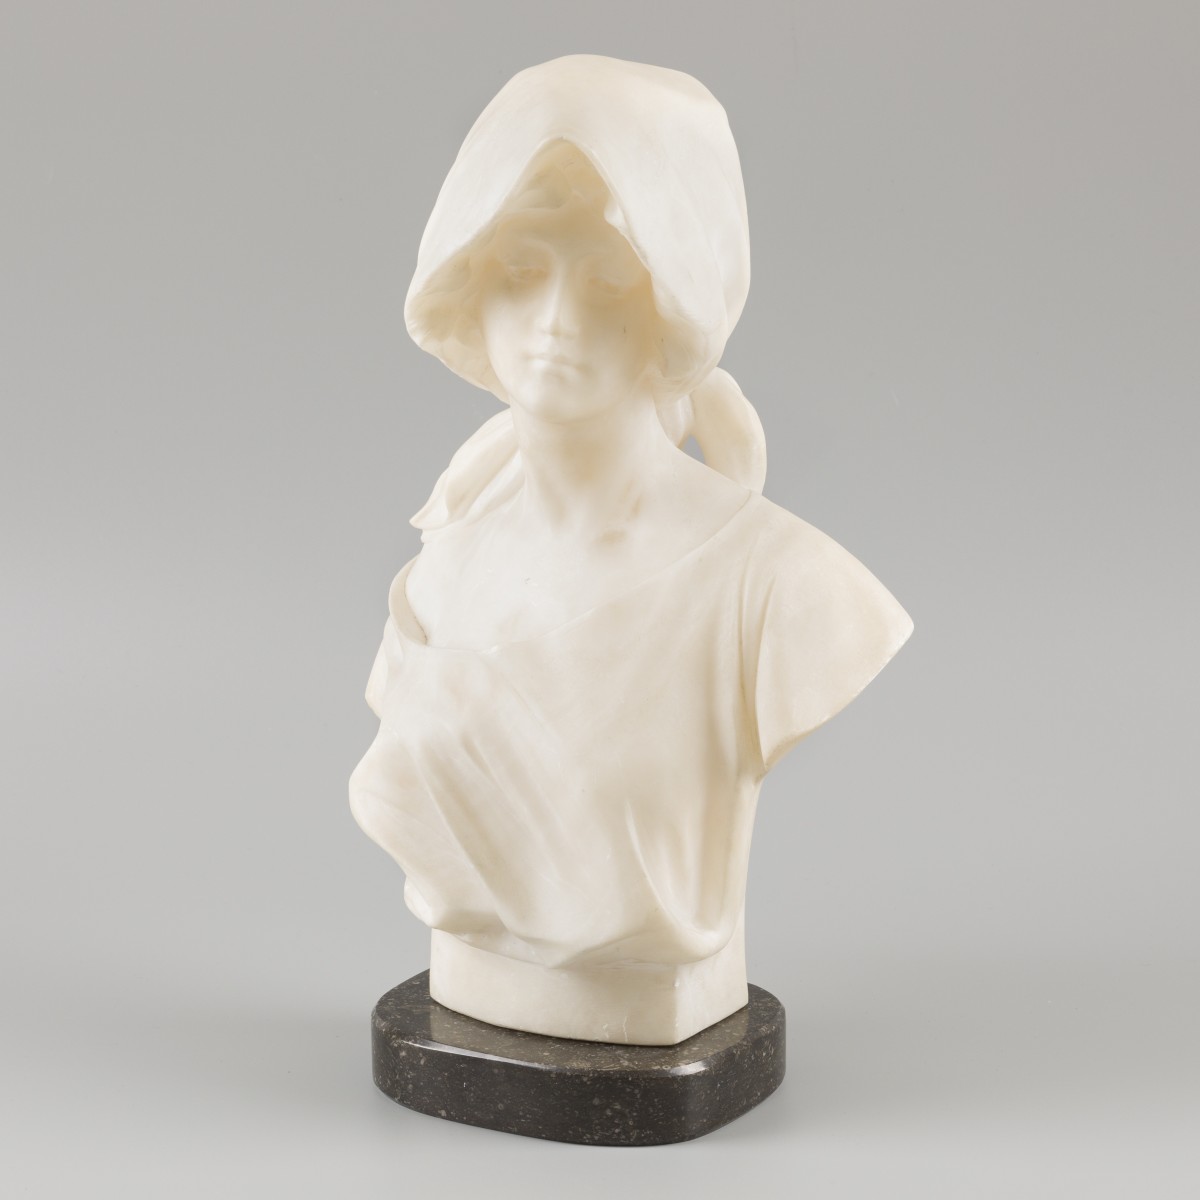 Richard Henry Park (1832-1890), Een marmeren buste, voorstellende een vrouw met gelokenogen.